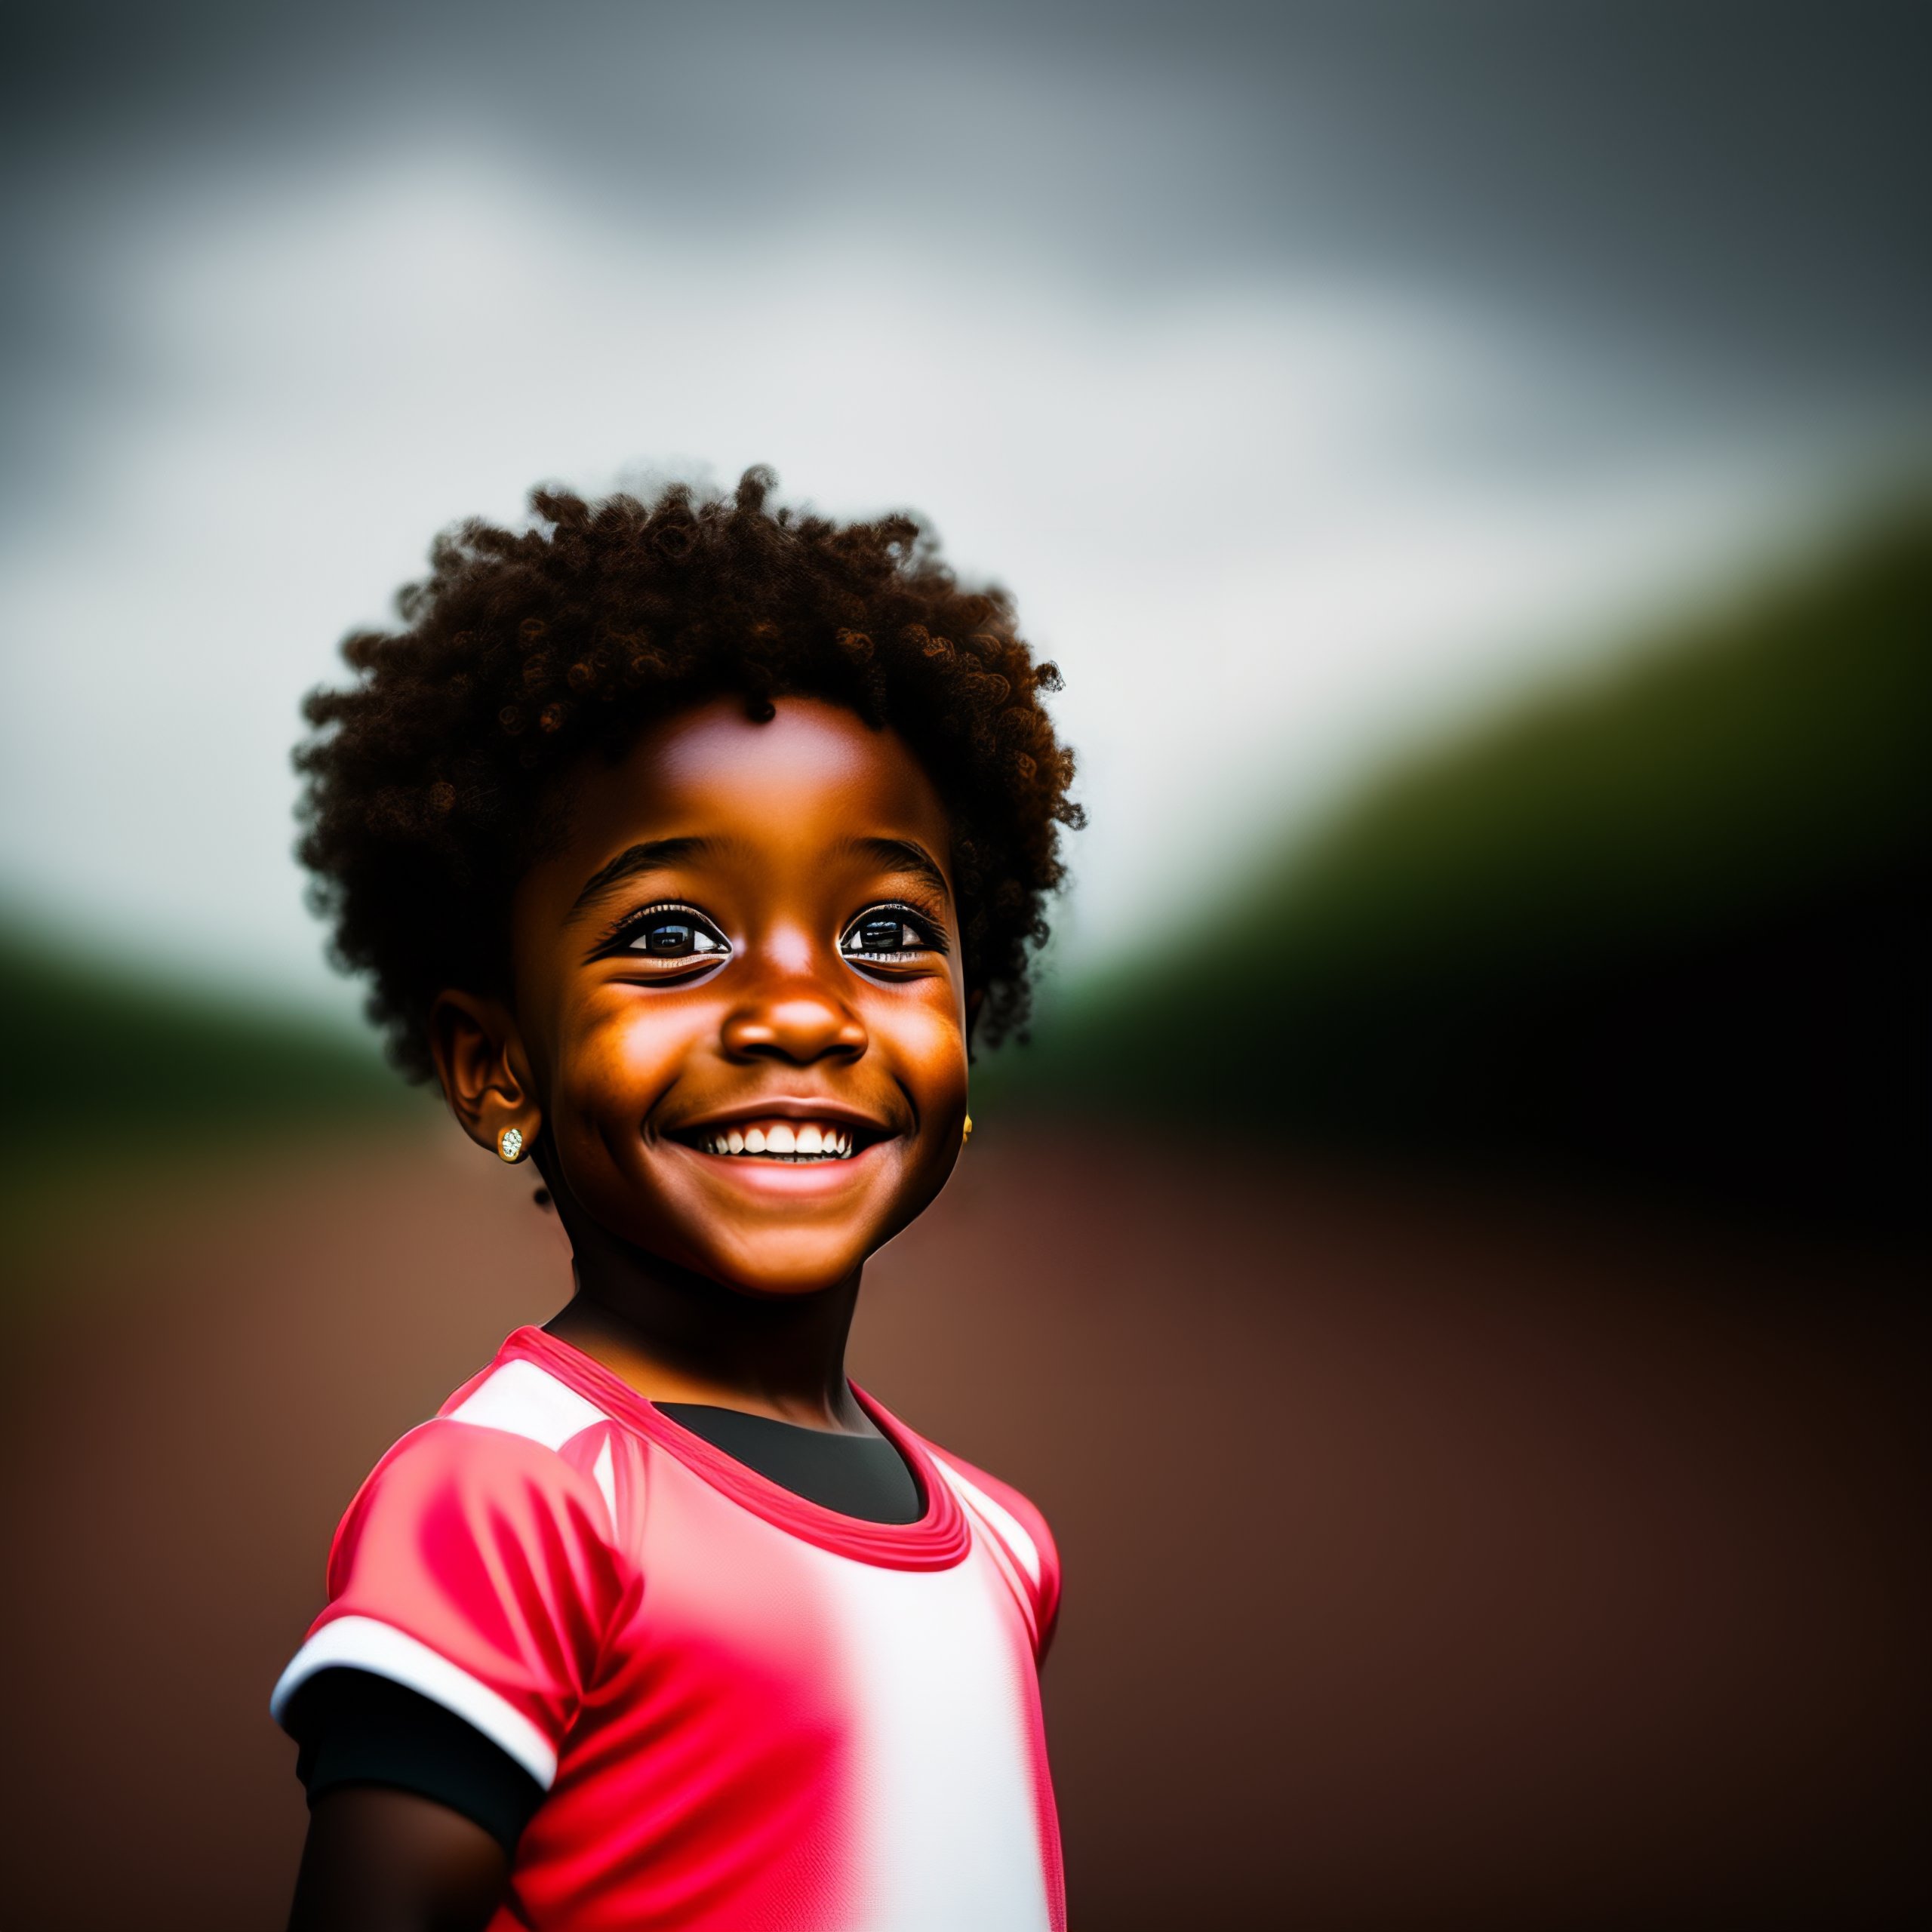 happy black child